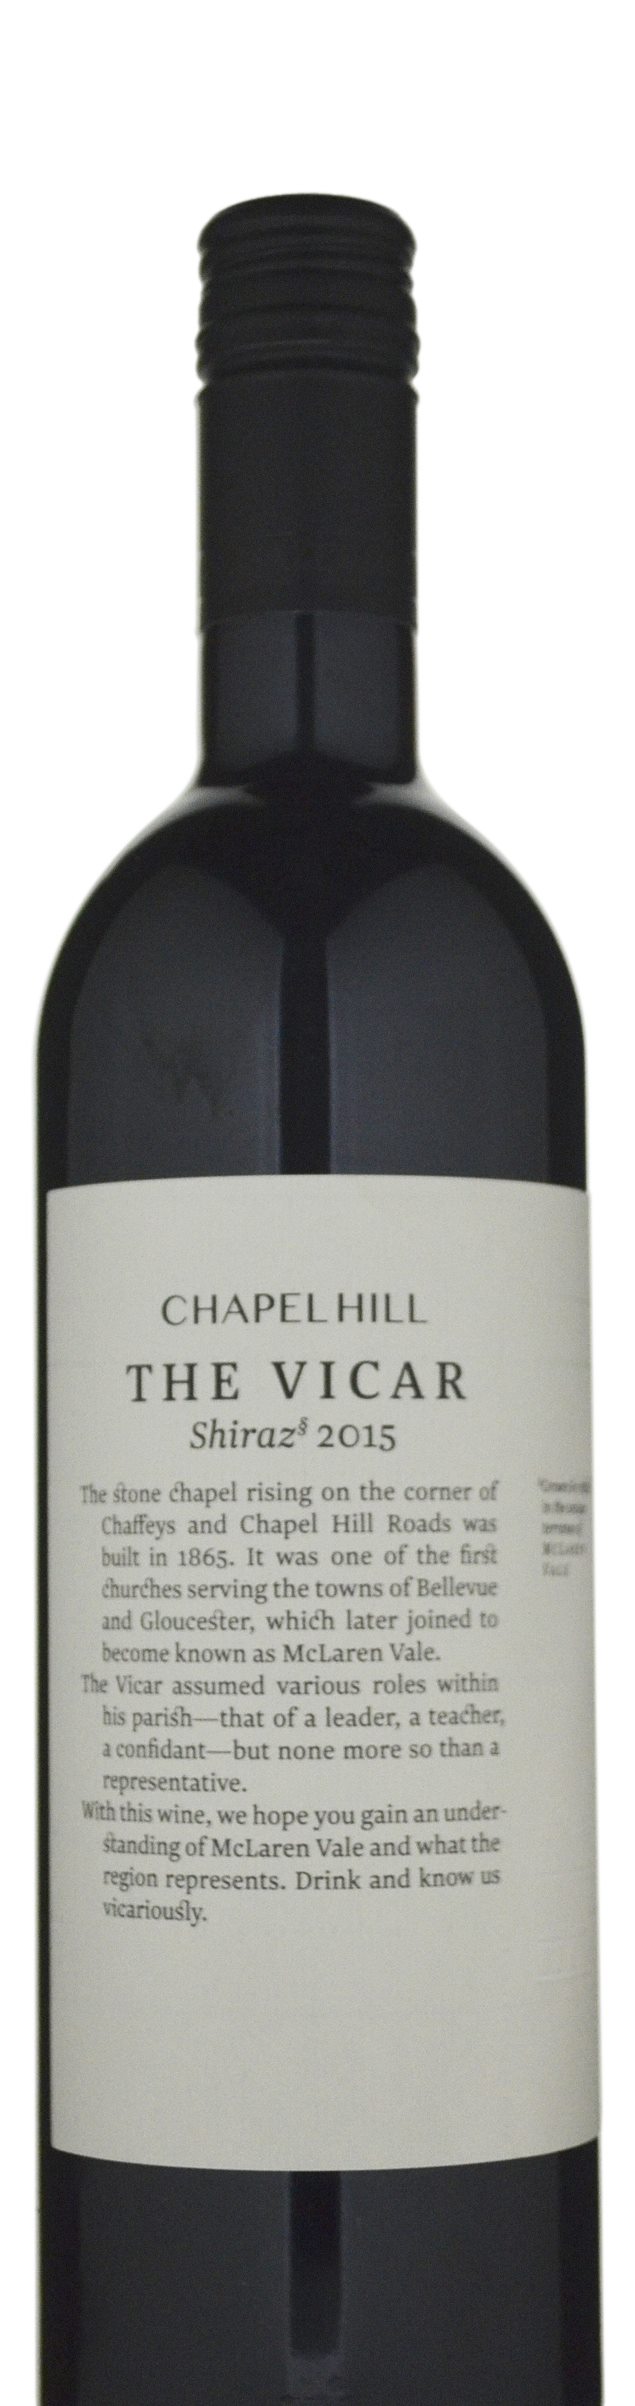 Chapel Hill The Vicar Shiraz 2015